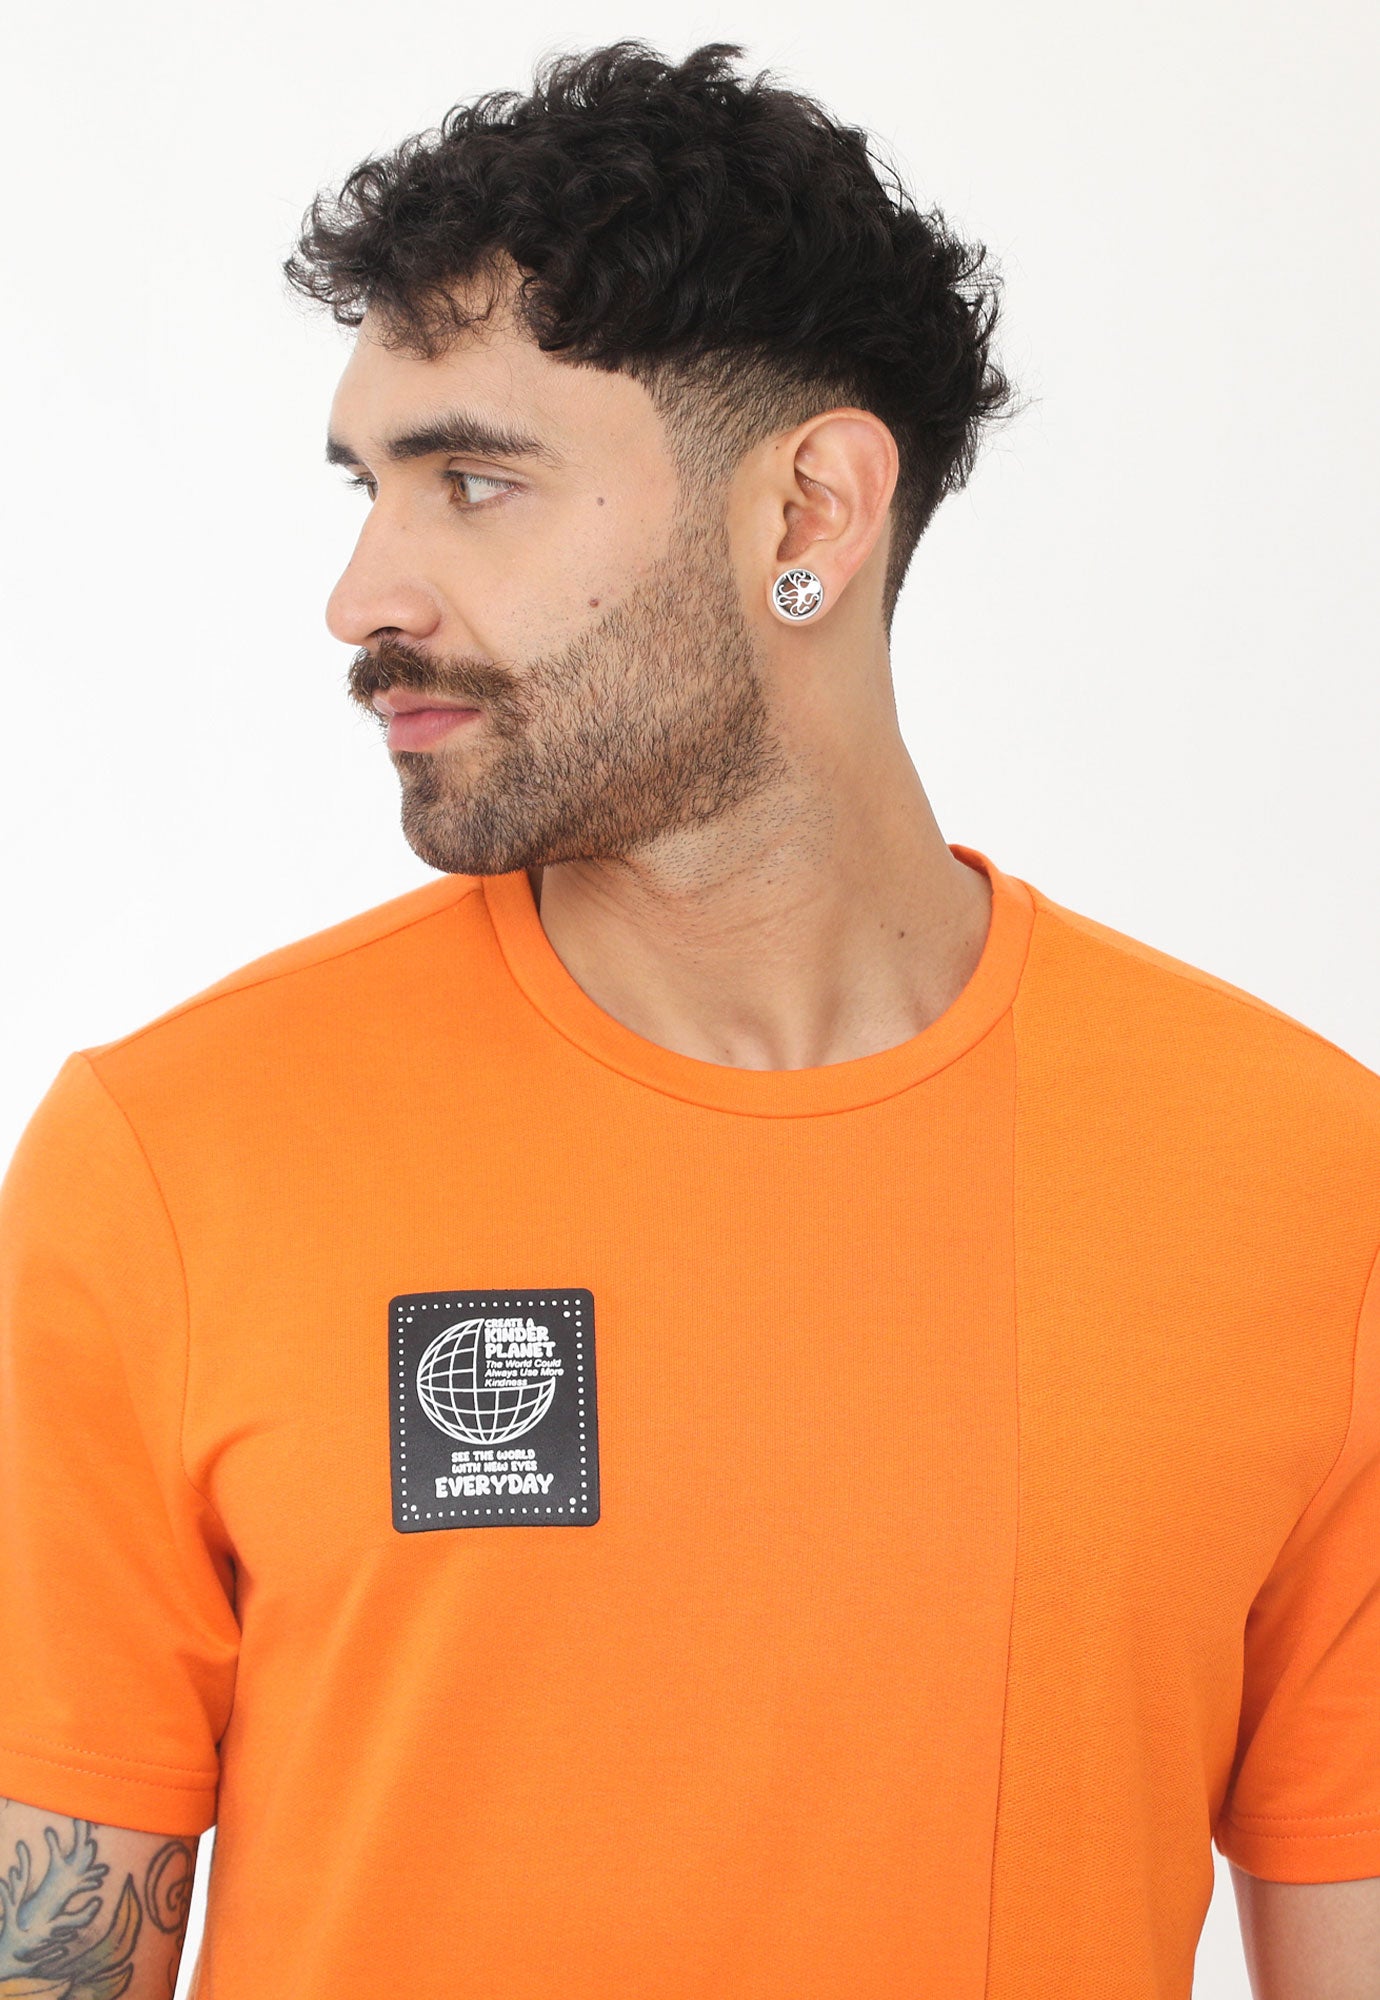 Camiseta naranja manga corta, bloque vertical en revés de tela, estampado en frente y cuello redondo para hombre